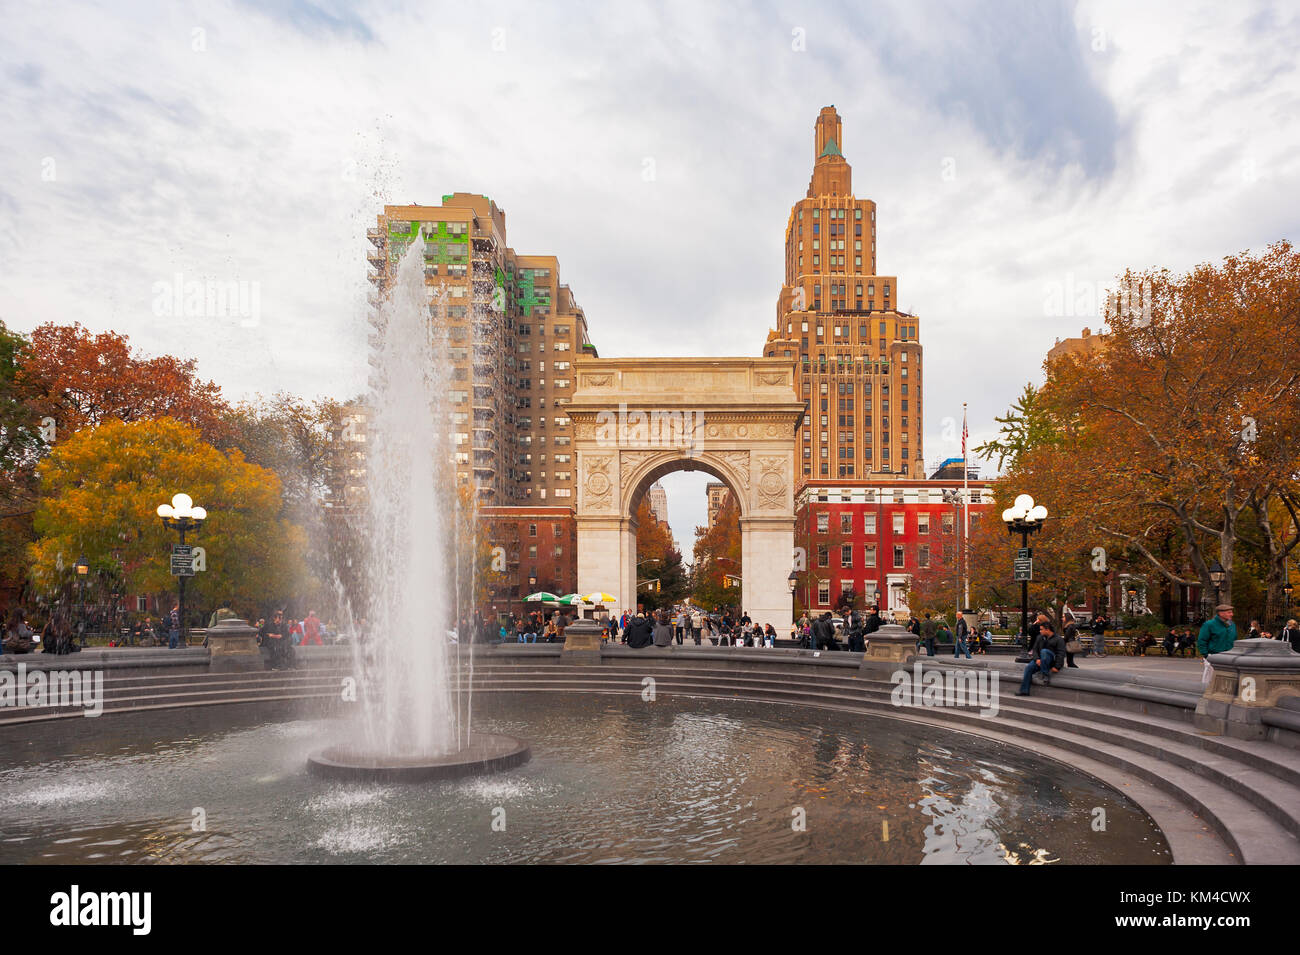 La città di New York, Stati Uniti d'America - Nov 13, 2011 : Washington Square Park e la fontana in autunno Foto Stock